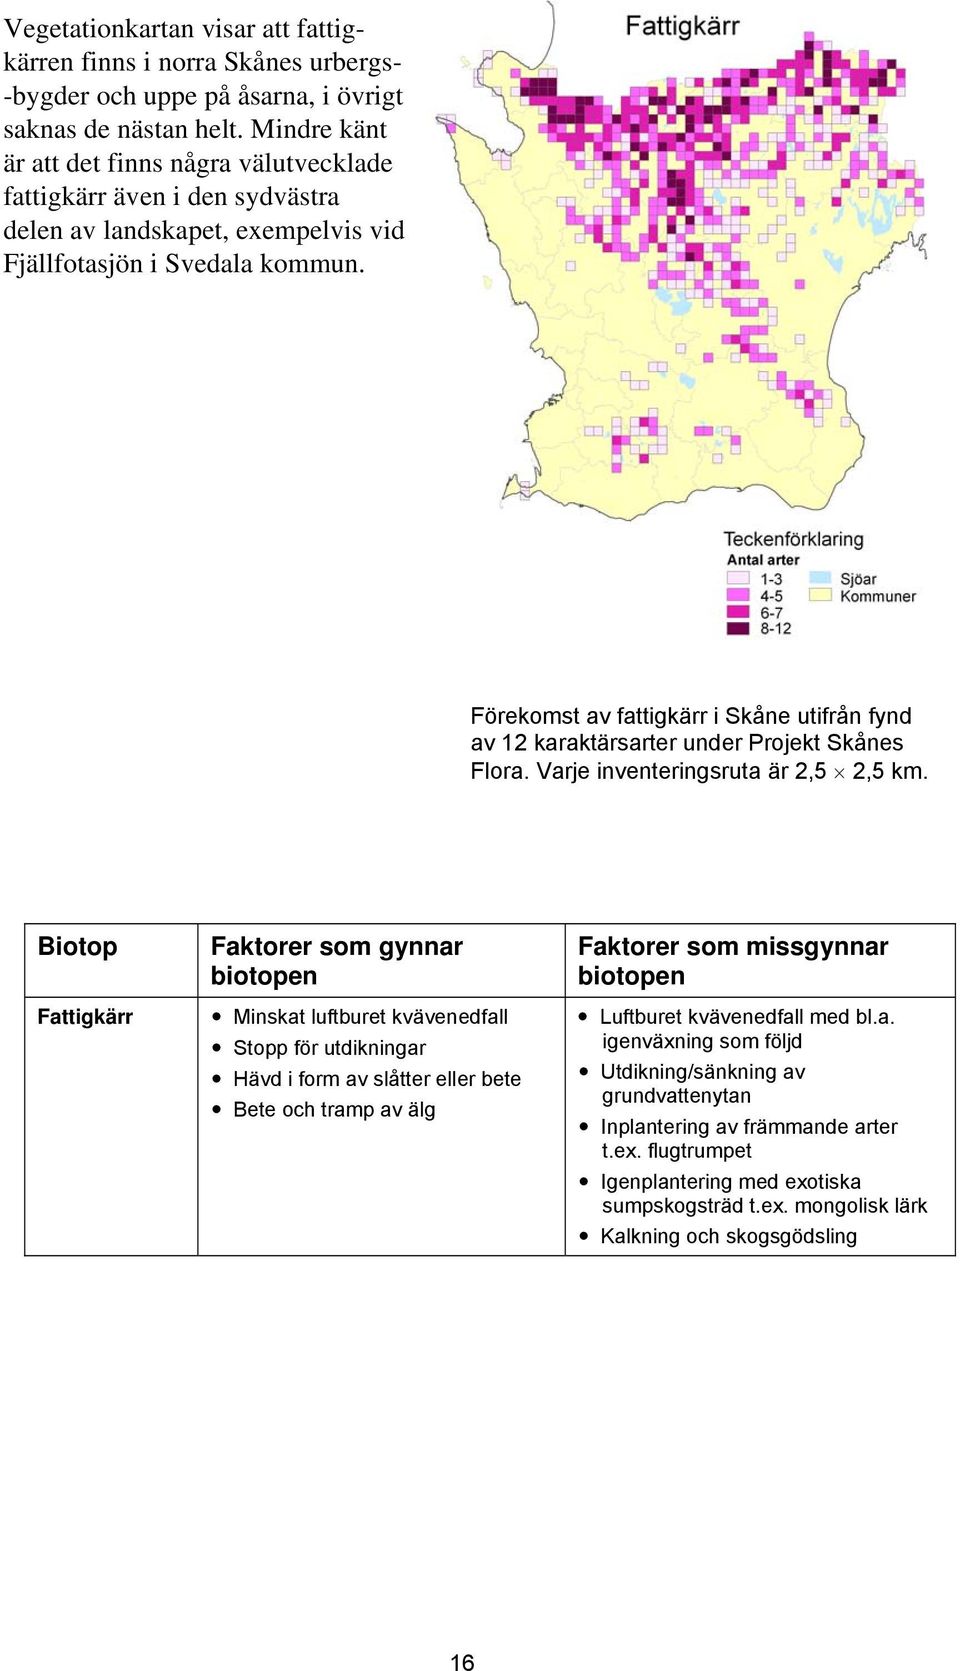 Förekomst av fattigkärr i Skåne utifrån fynd av 12 karaktärsarter under Projekt Skånes Flora. Varje inventeringsruta är 2,5 2,5 km.